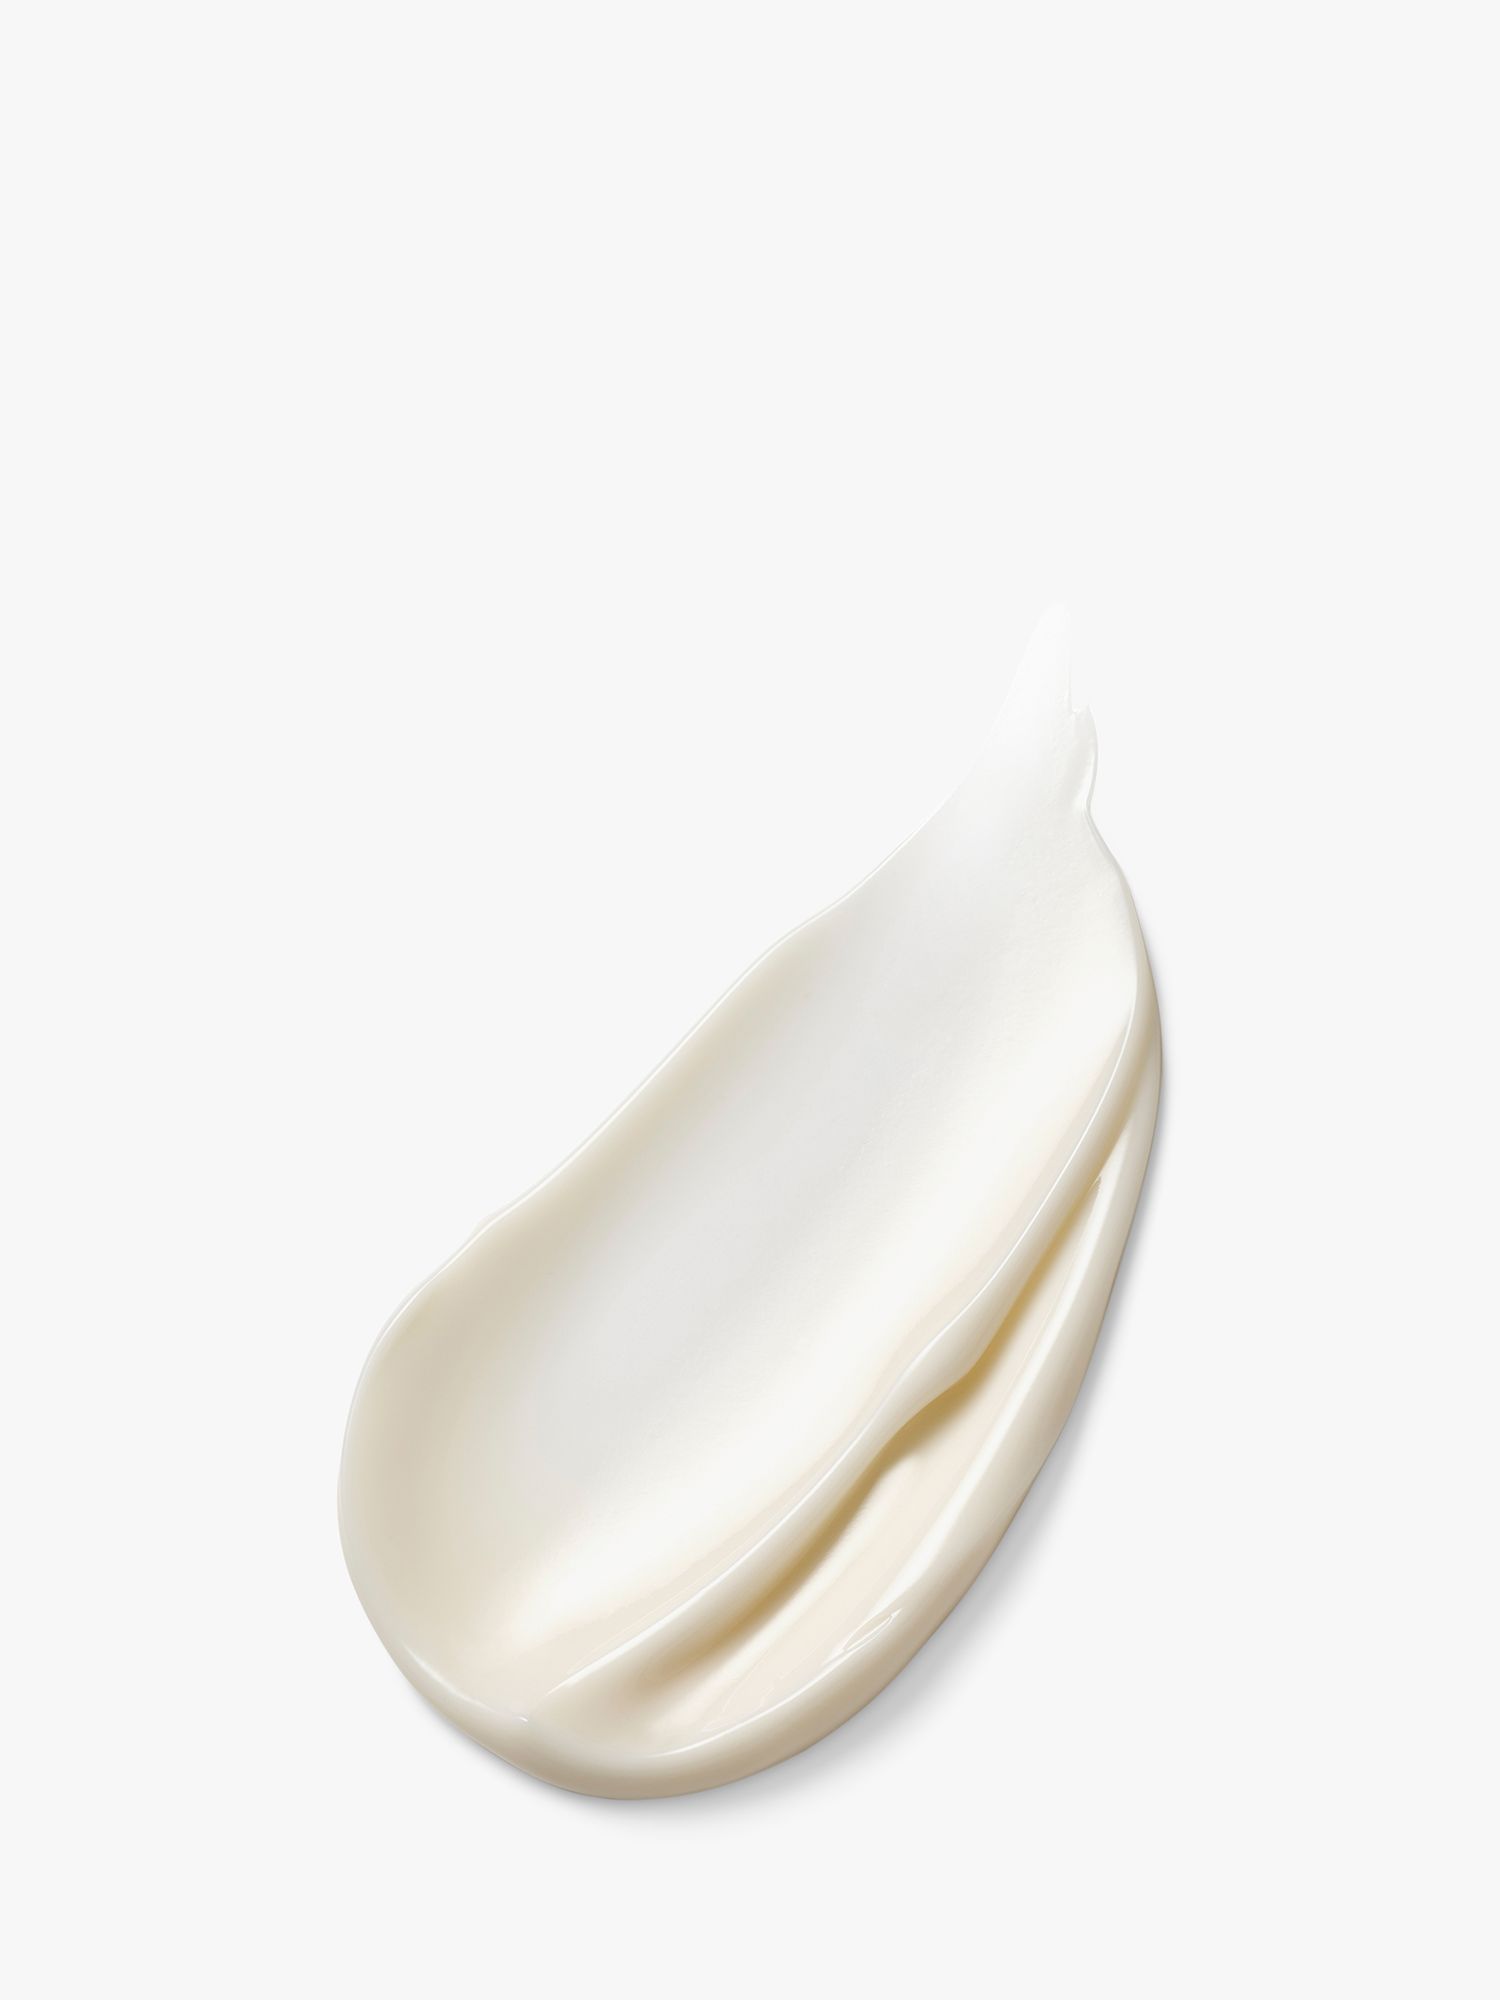 Estée Lauder Nutritious Melting Soft Crème / Mask, 50ml 2